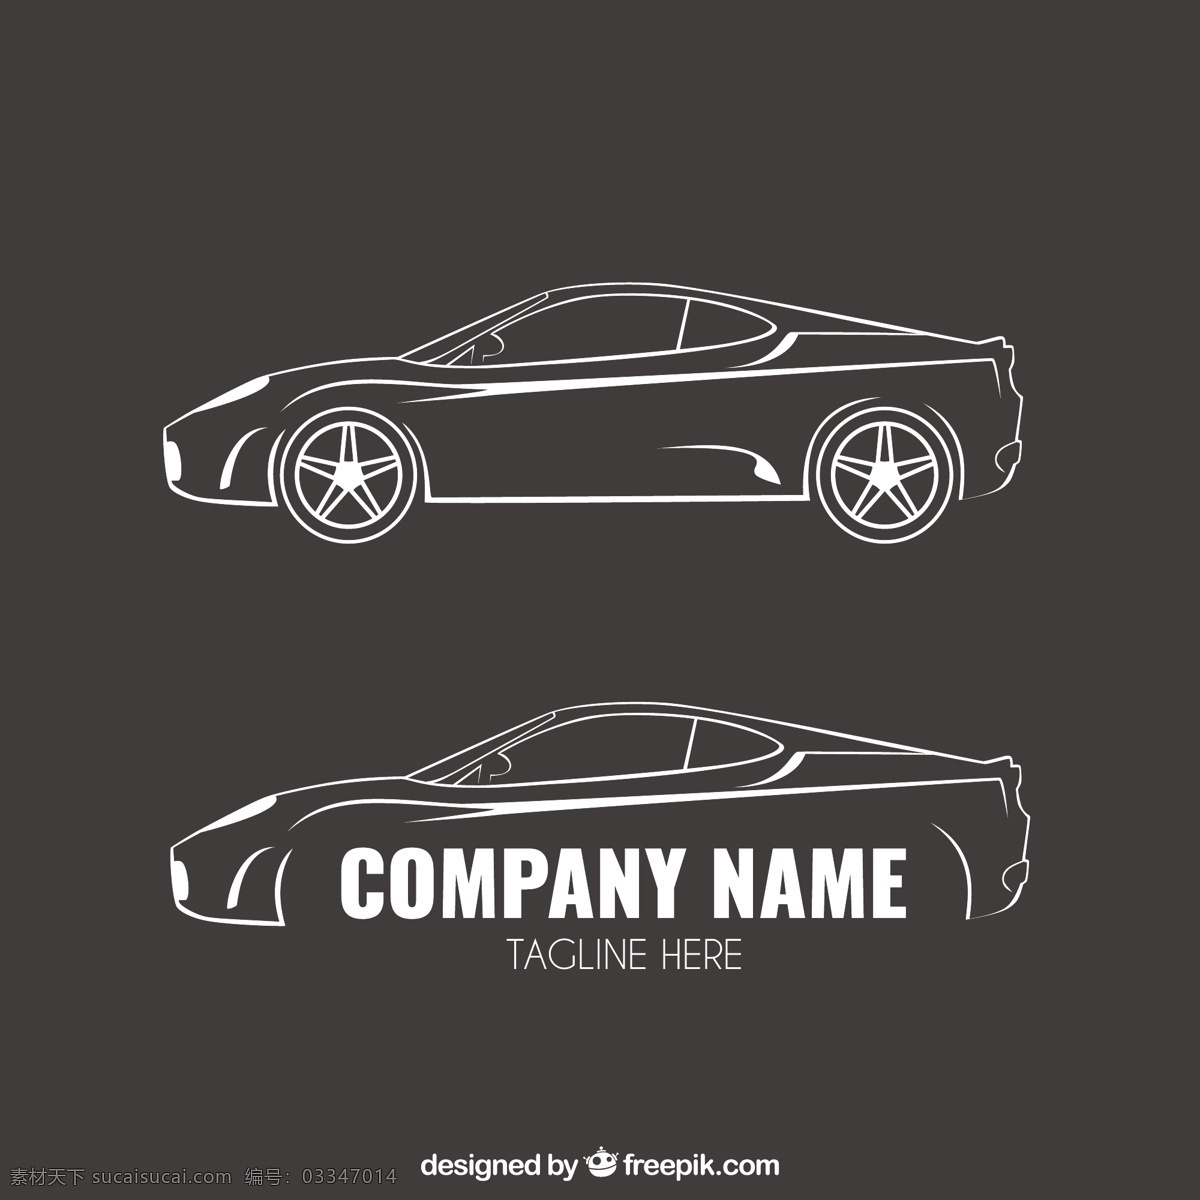 粗略 汽车 标志 车 手 模板 手绘 企业 公司 运输 绘图 企业形象 身份 车辆 画汽车 公司logo logo模板 灰色